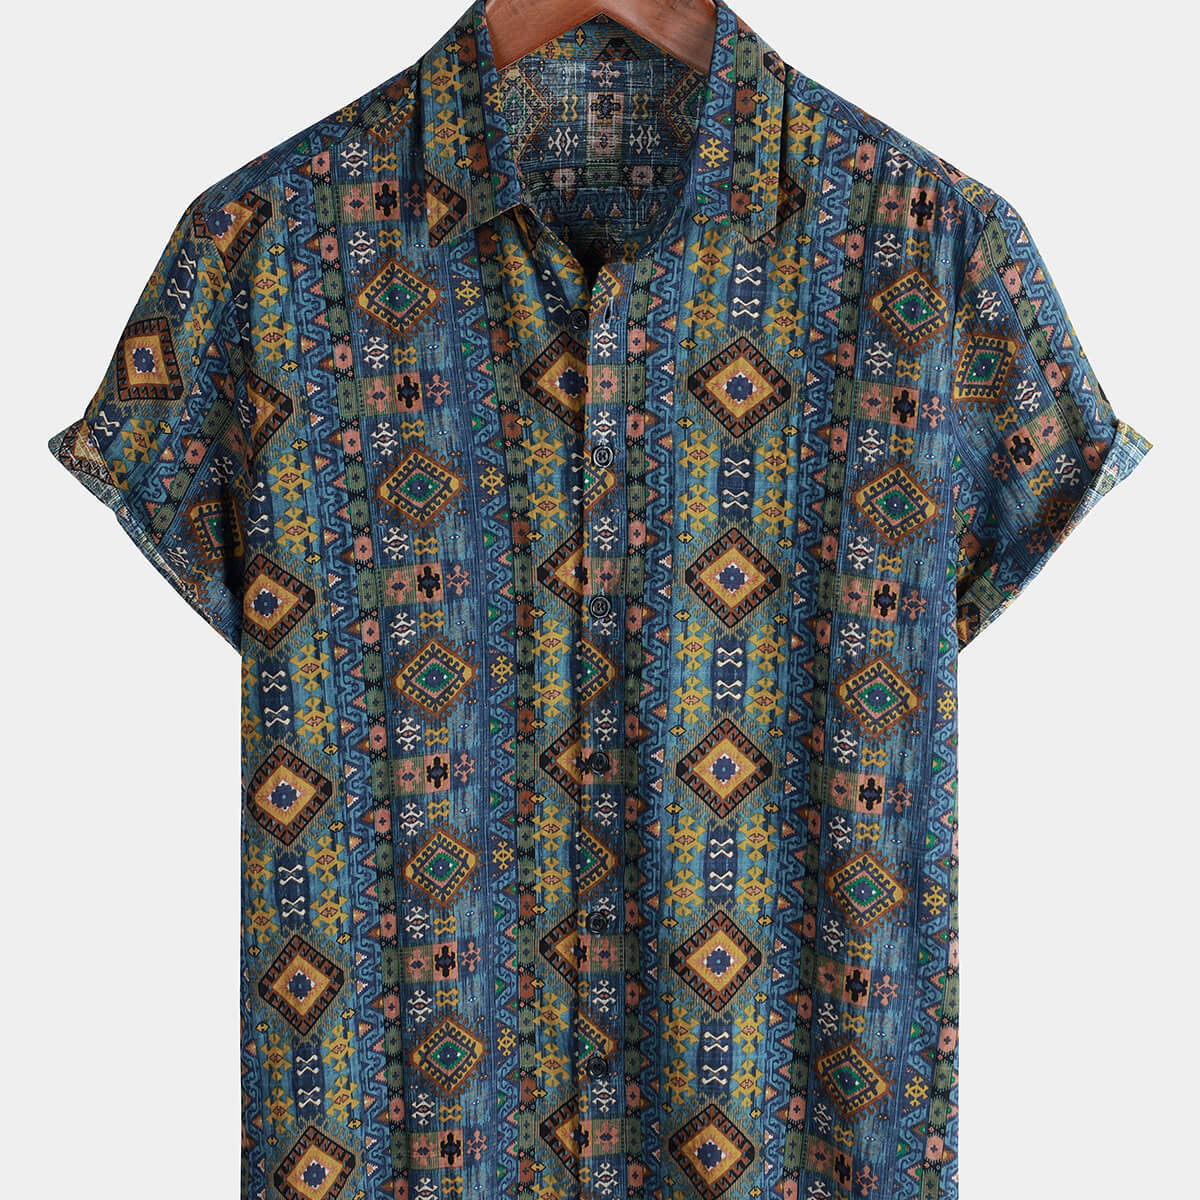 Chemise boutonnée à manches courtes en coton pour hommes, imprimé rétro aztèque des années 70